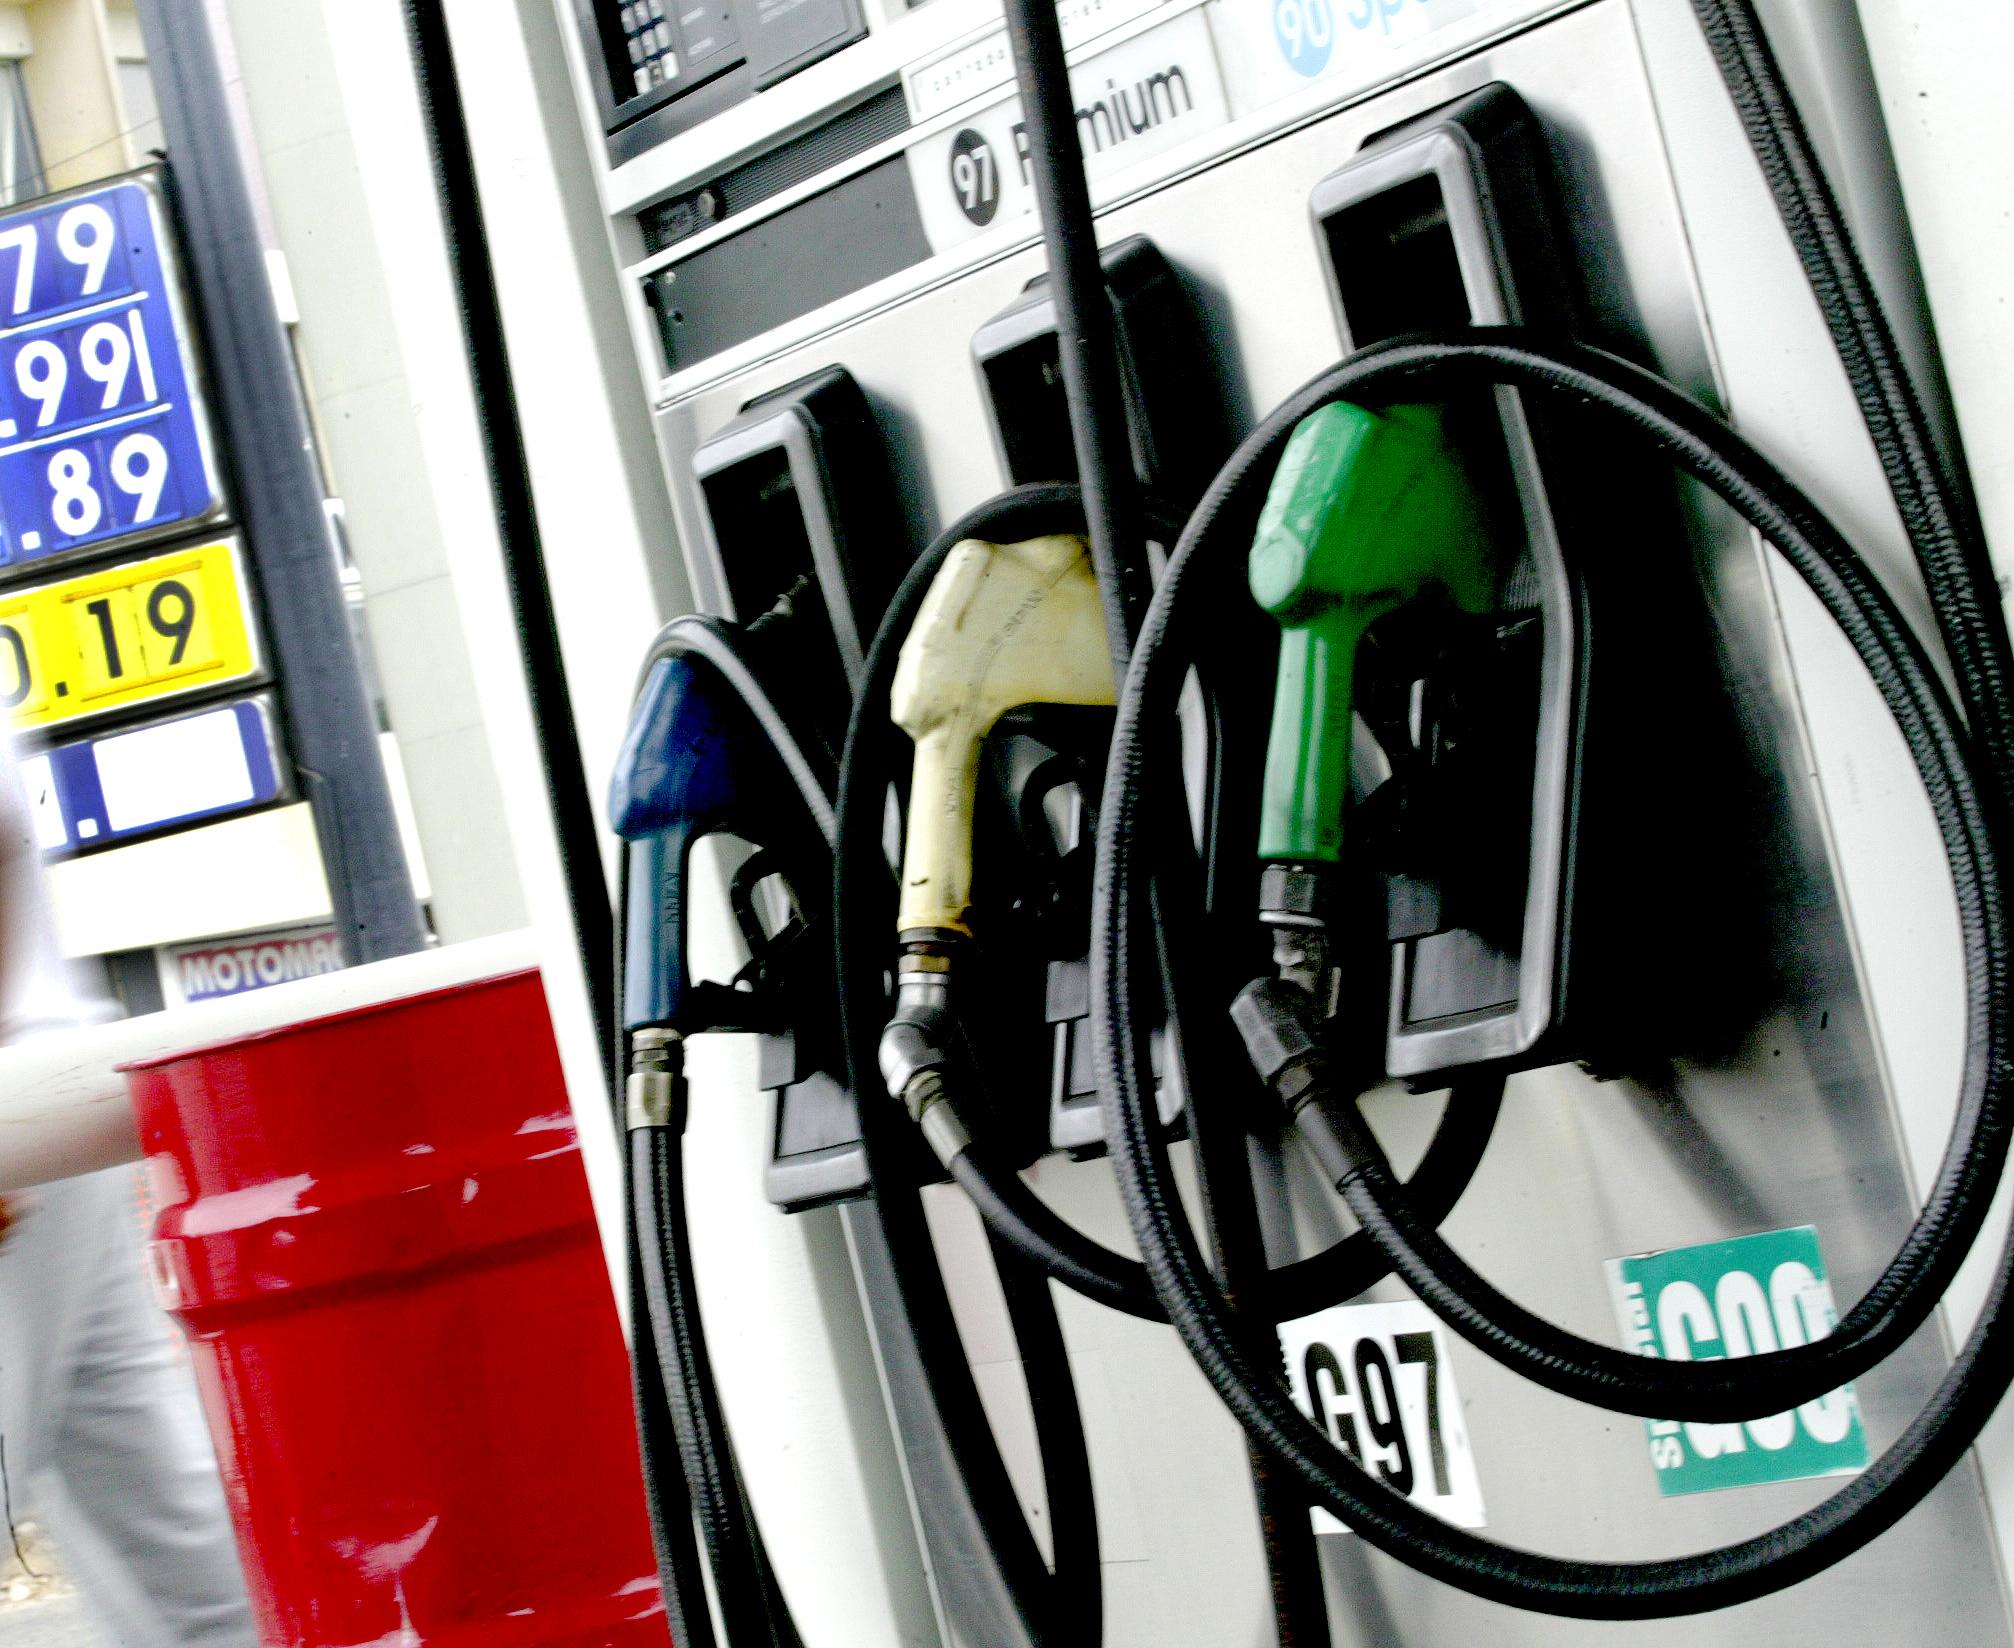  Meade evalúa impacto por alza de gasolinas